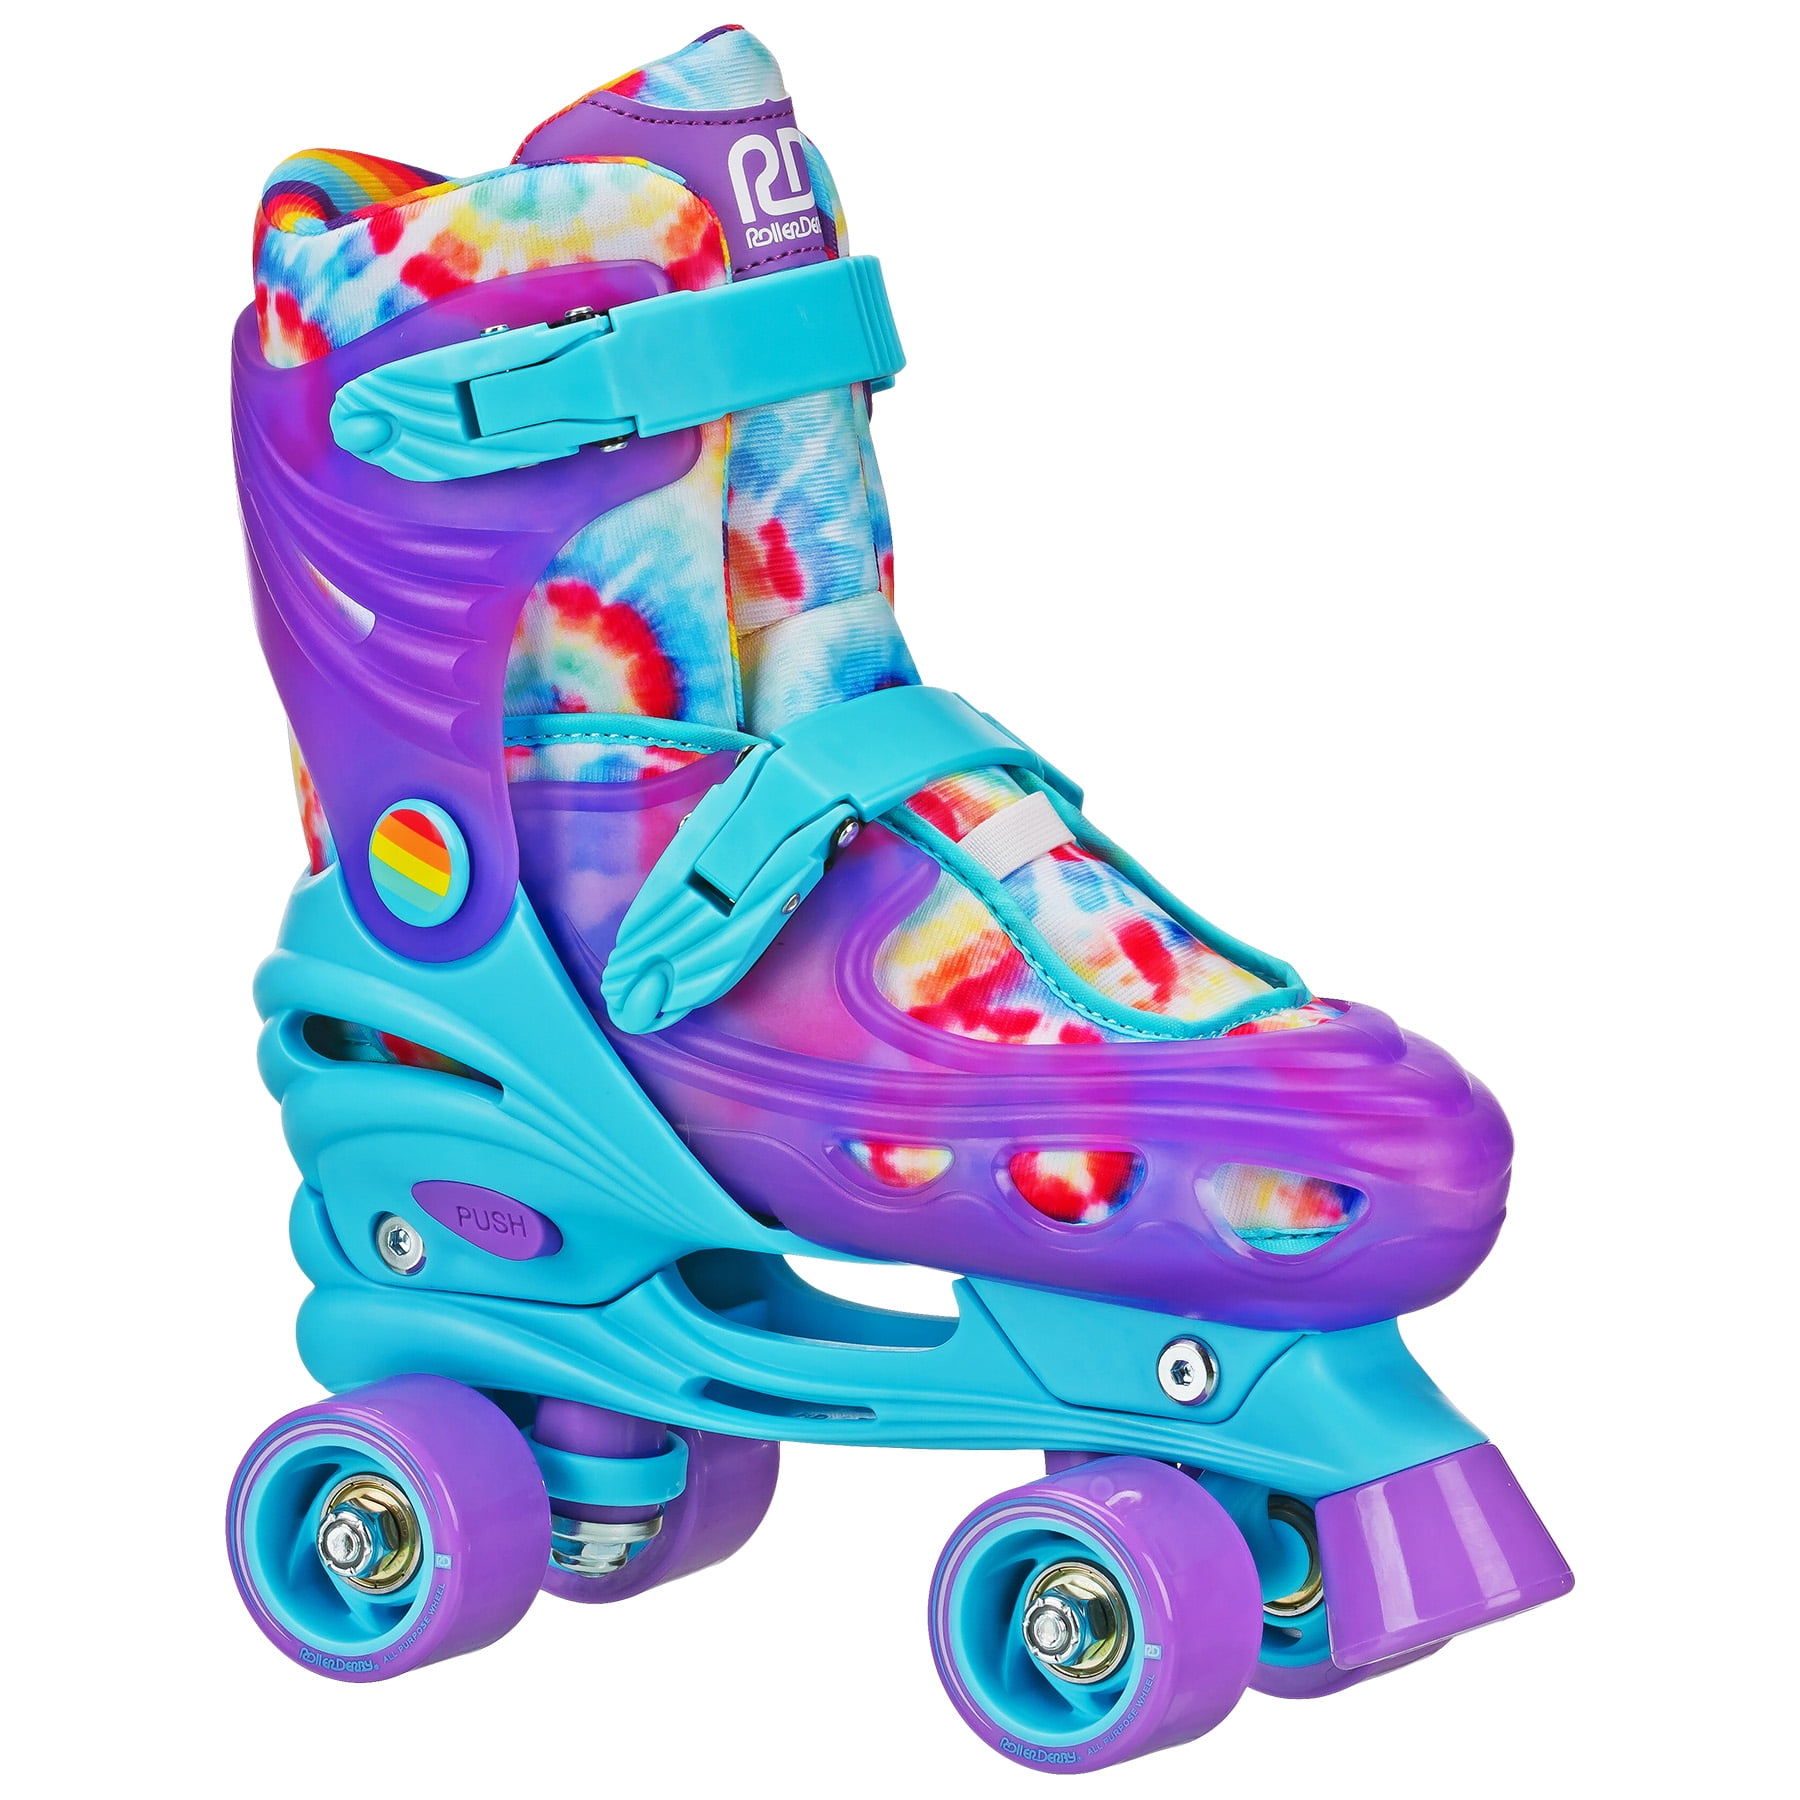 Girls Adjustable High Top Quad Skates by Roller Derby Medium Size 3-6 for sale online 